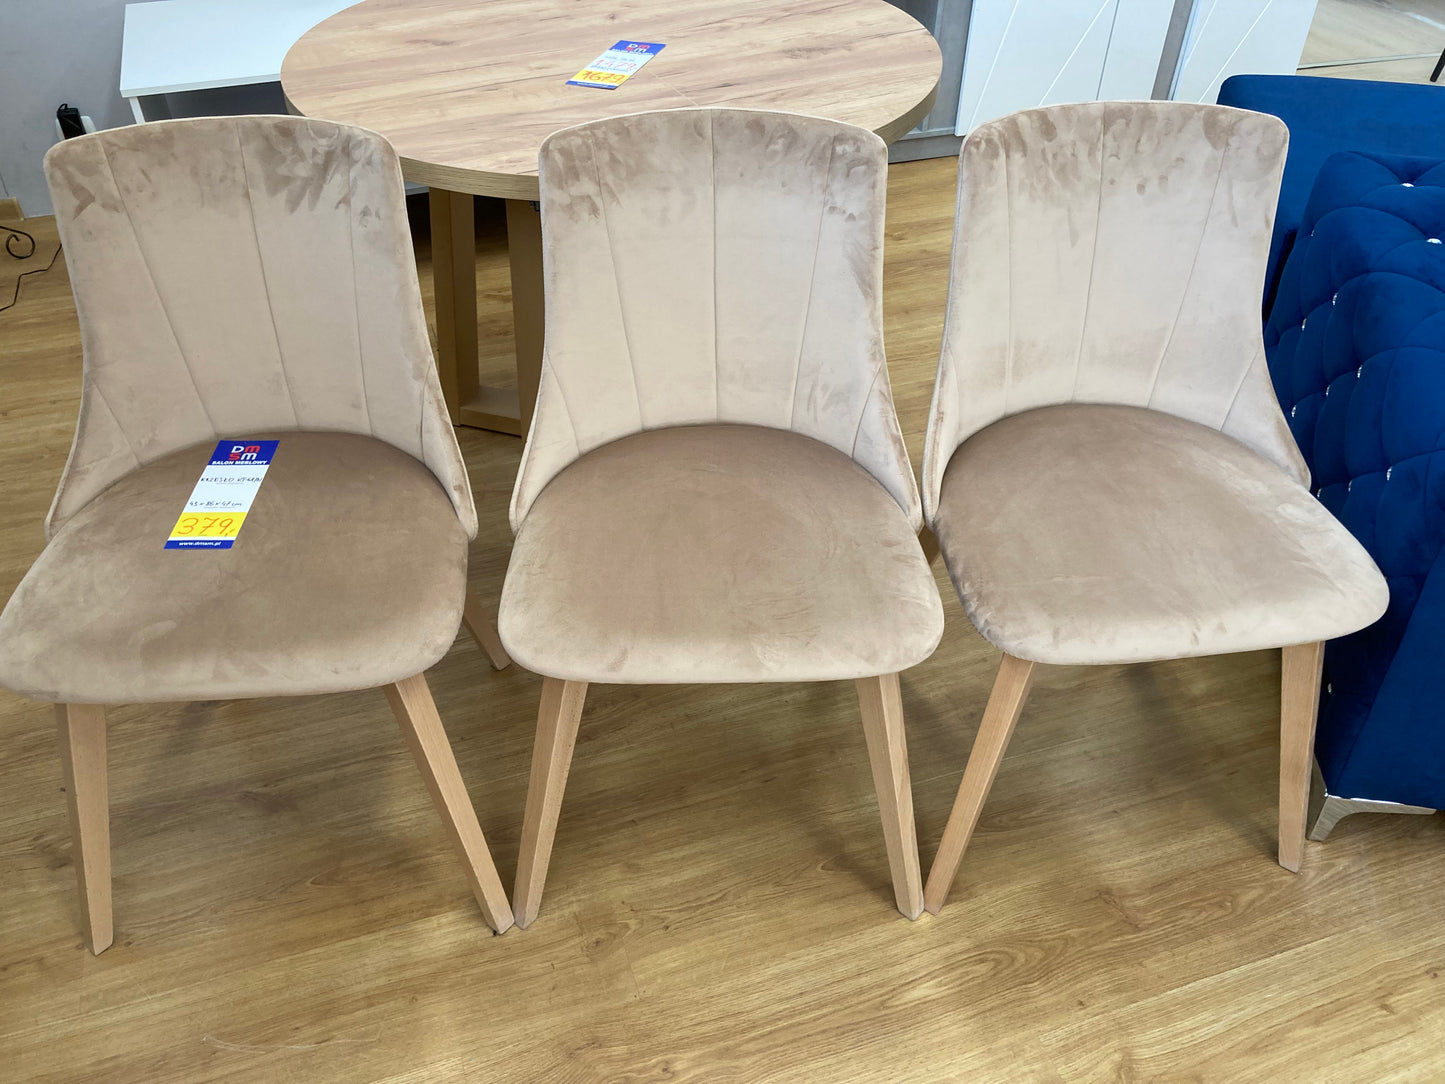 3 sztuki krzeseł wyprzedażowych KT-61 w jasnej welurowej tkaninie, na drewnianych solidnych nogach wyglądają niezwykle elegancko.